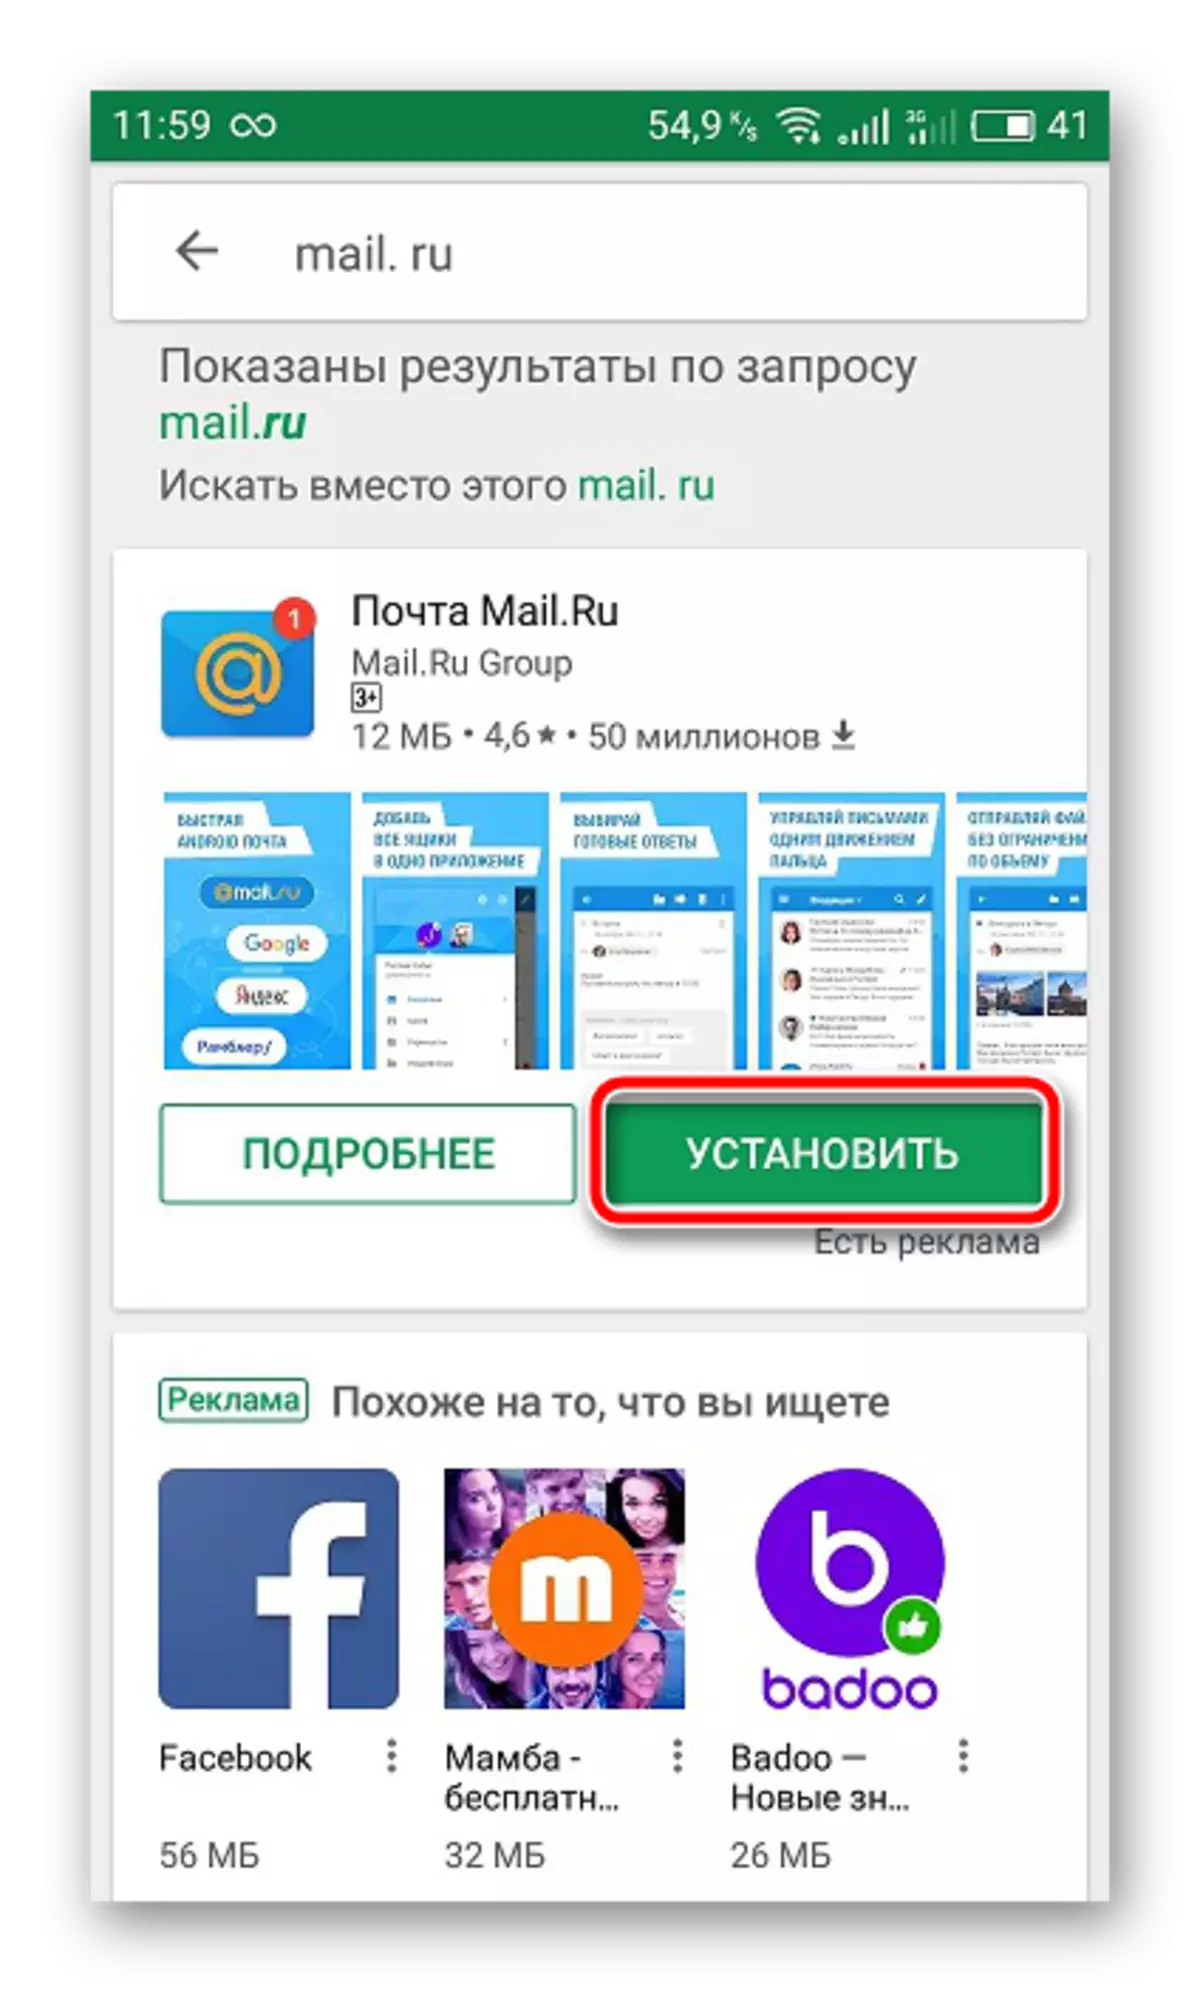 Download Onye ahịa Mail.ru